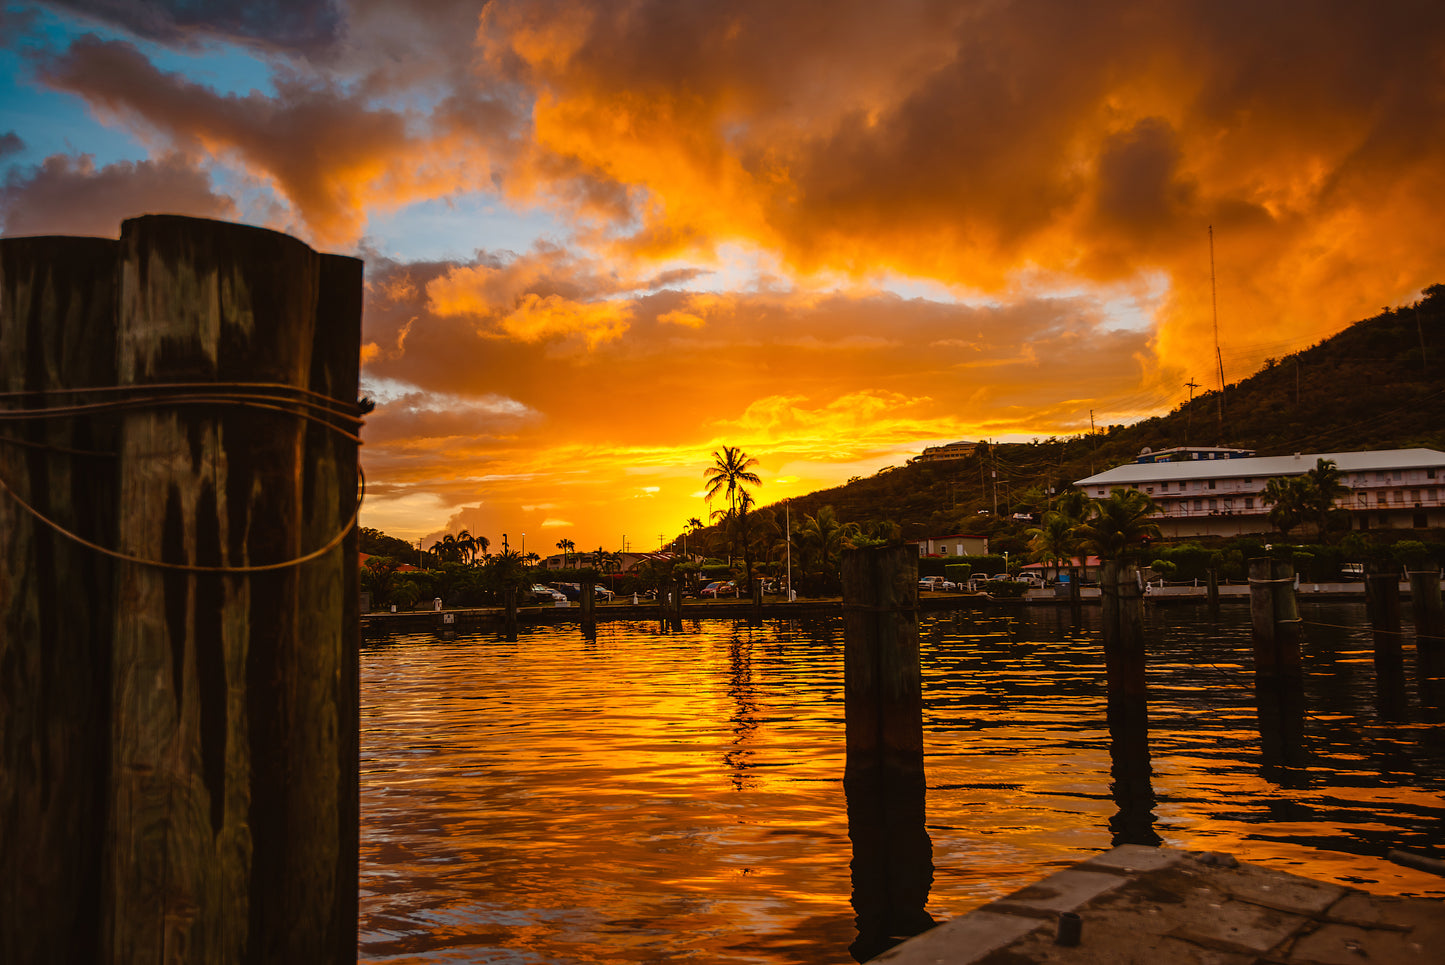 Natural Wonders of the Picturesque U.S. Virgin Islands